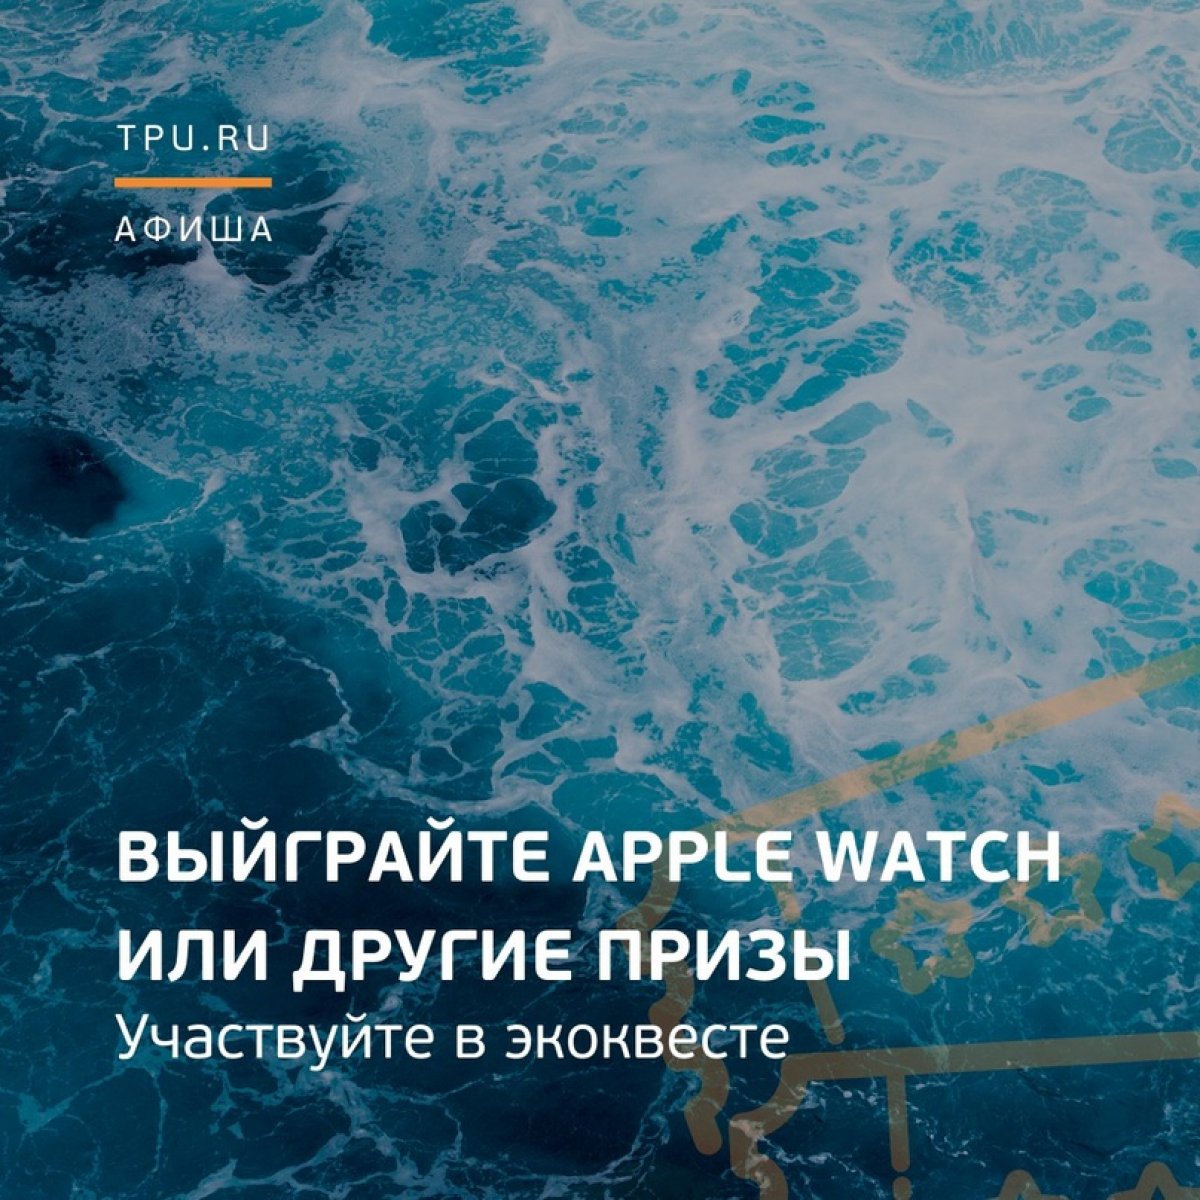 😃 Хотите выиграть Apple Watch, беспроводные колонки, сертификат на 50 000 рублей в Нетологию и другие призы? Тогда эта информация для вас!